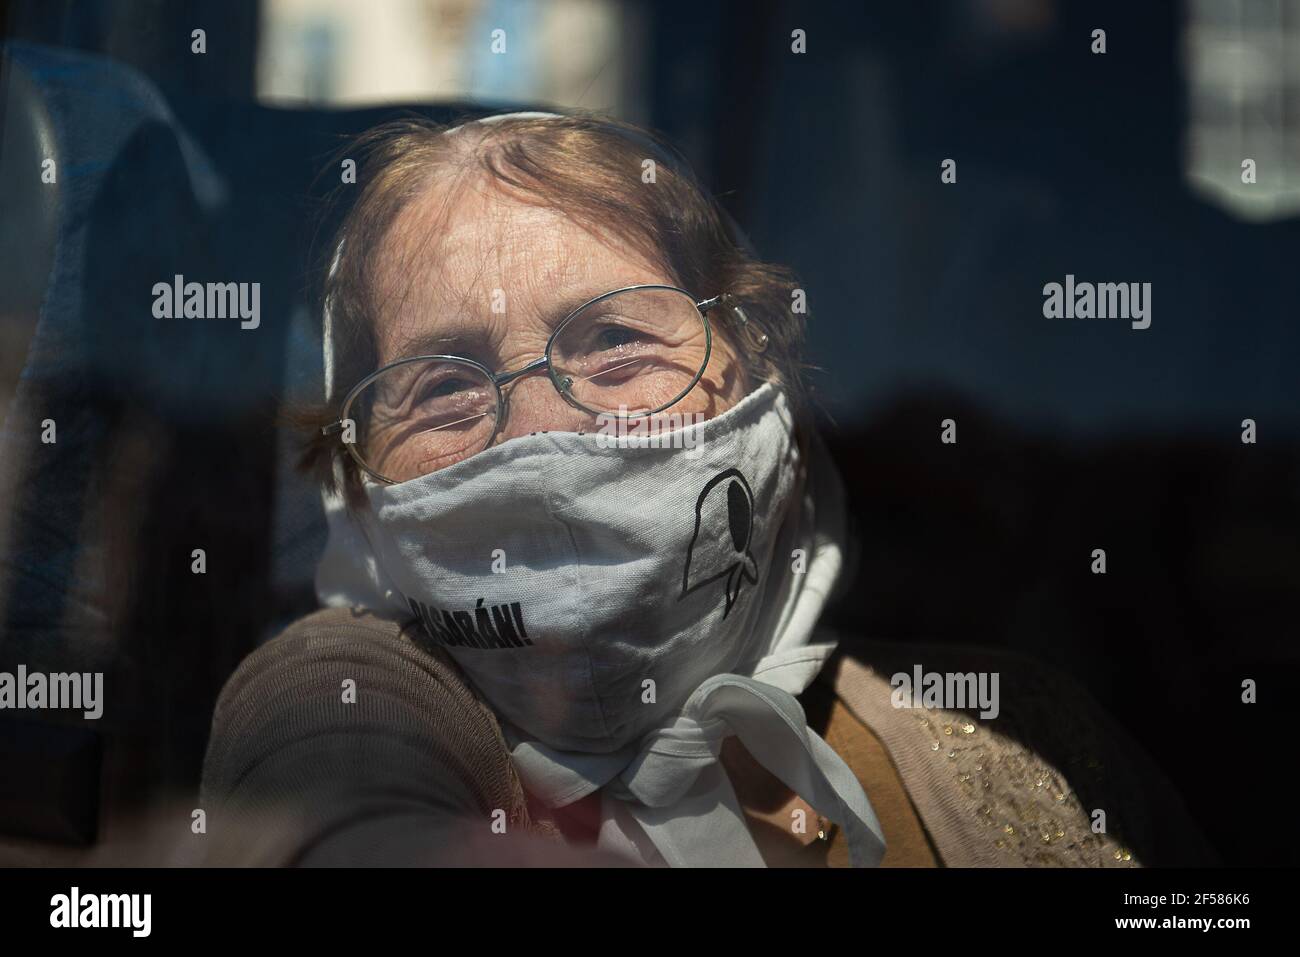 Mutter von Plaza de Mayo schaut auf die Kamera in ihrem Transport.die Mütter von Plaza de Mayo kehrten nach mehr als einem Jahr zurück, um zu mobilisieren. Zum Jahrestag des Militärputsches von 1976 in Argentinien. Stockfoto